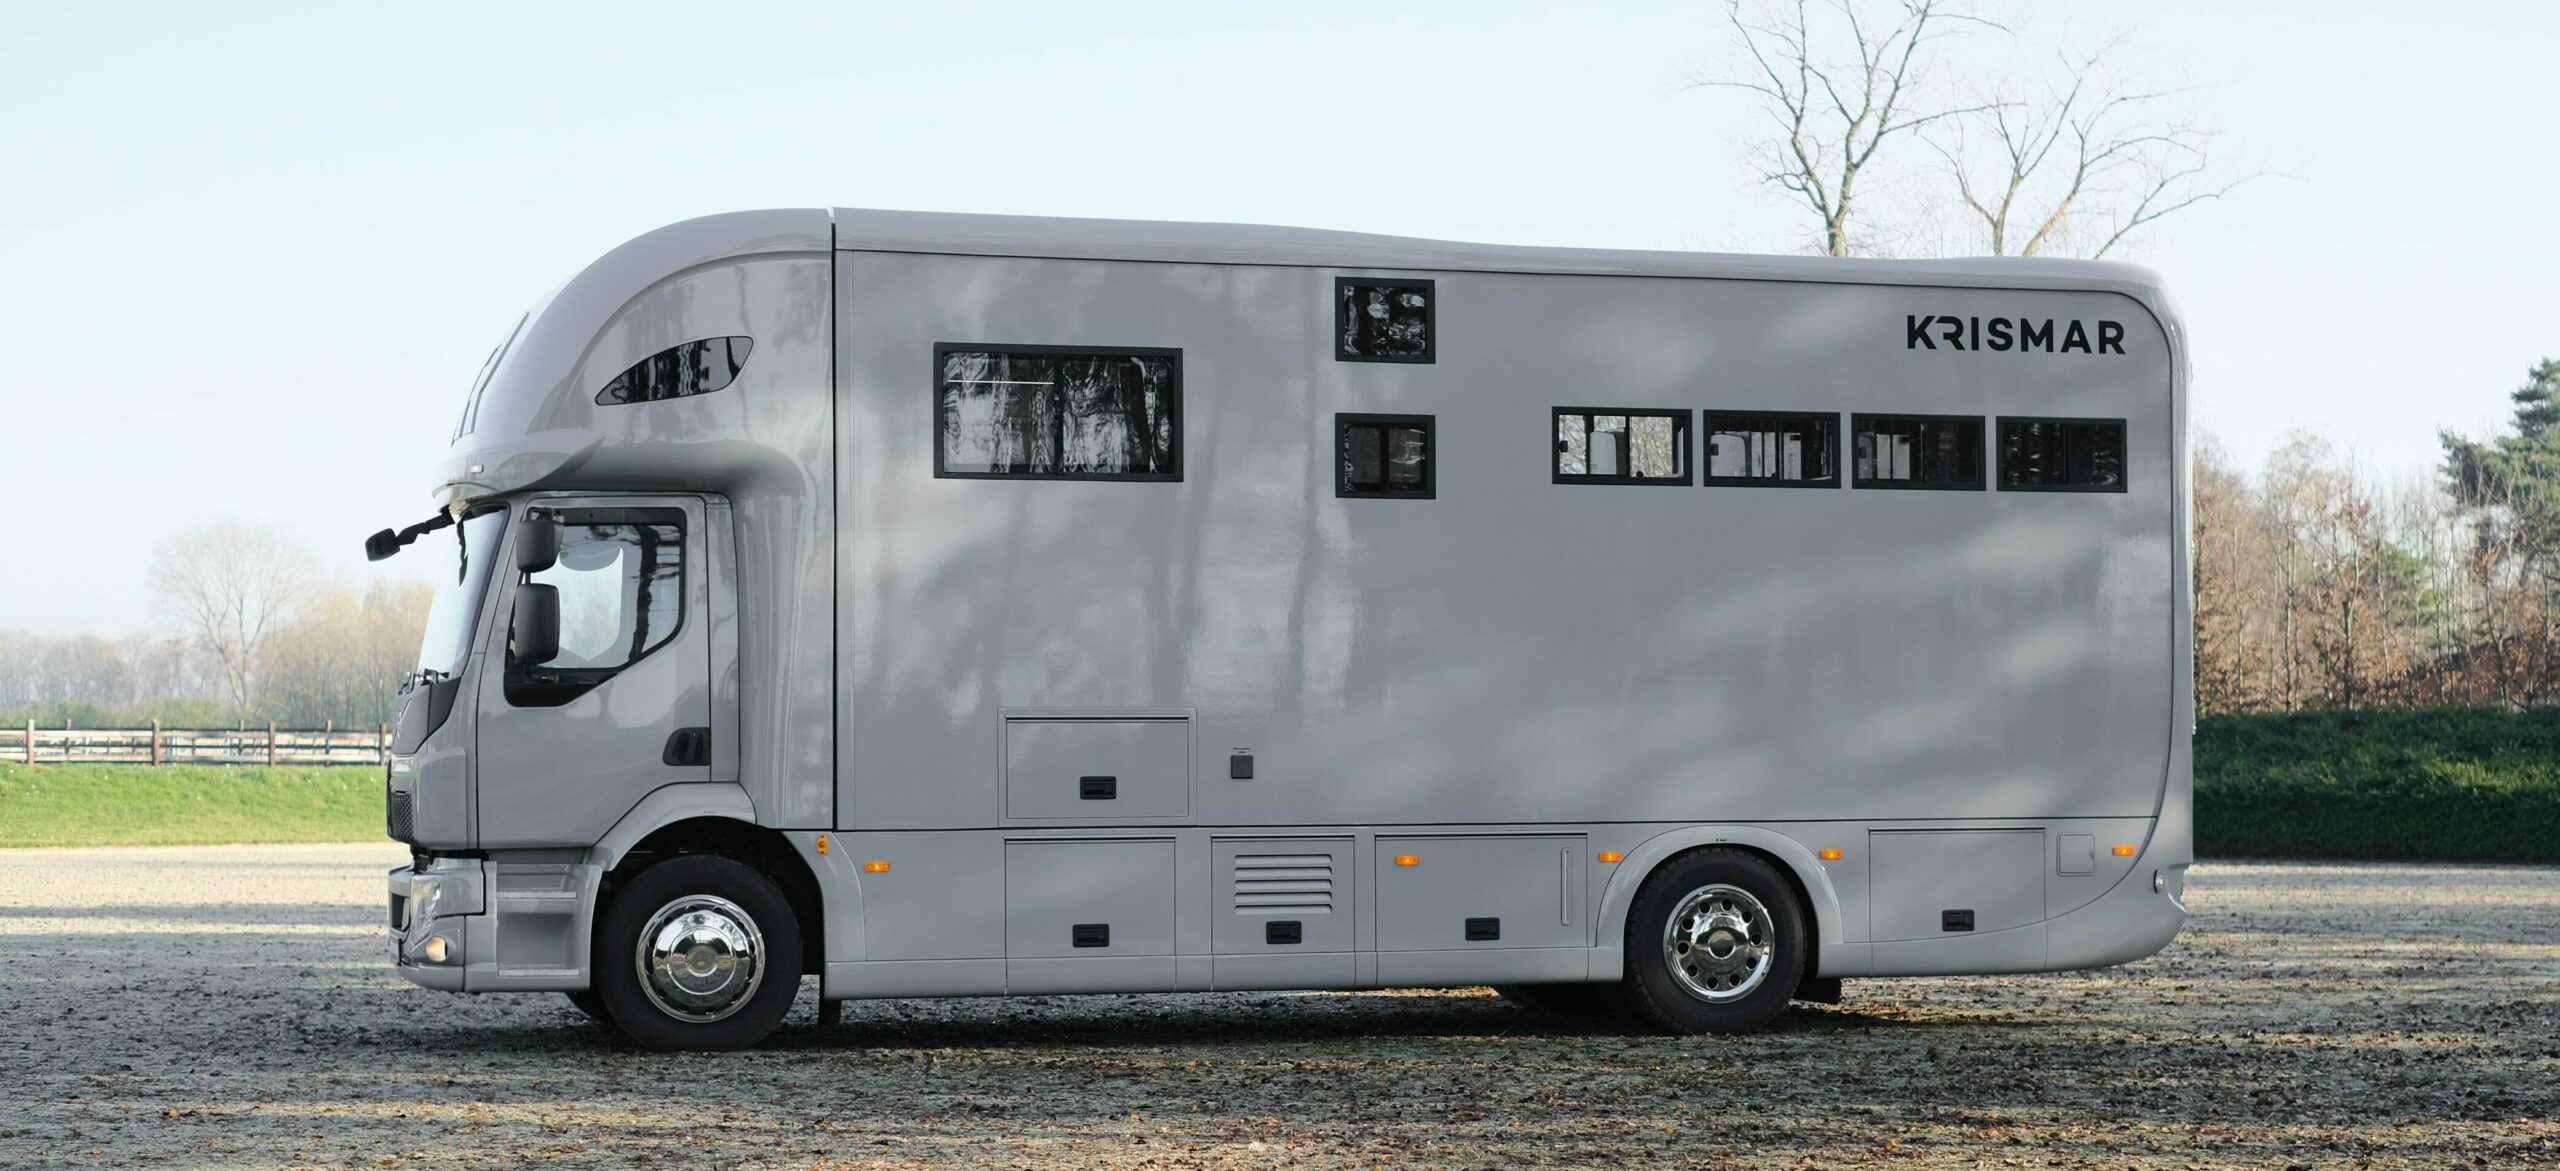 Krismar paardenvrachtwagen professional in een grijze kleur voor 4 paarden